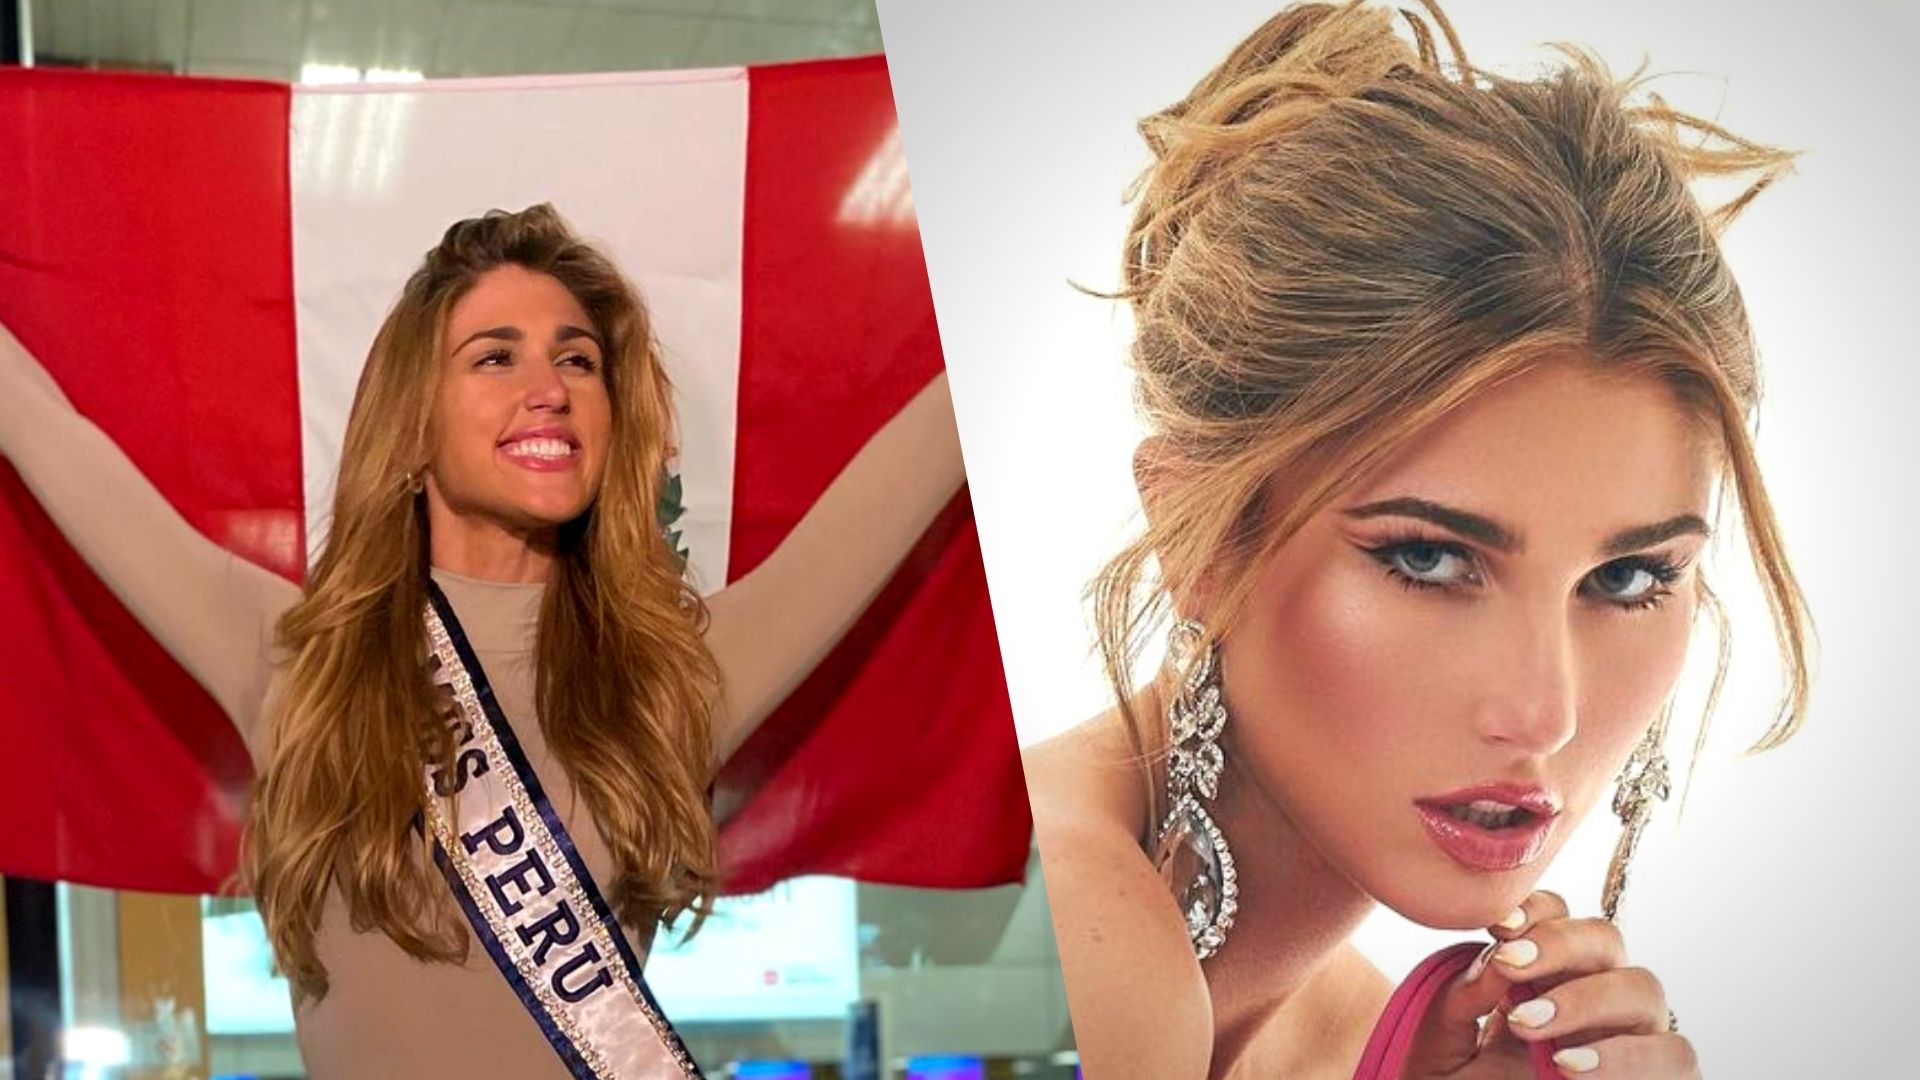 Alessia Rovegno is the Peruvian representative in Miss Universe 2022.